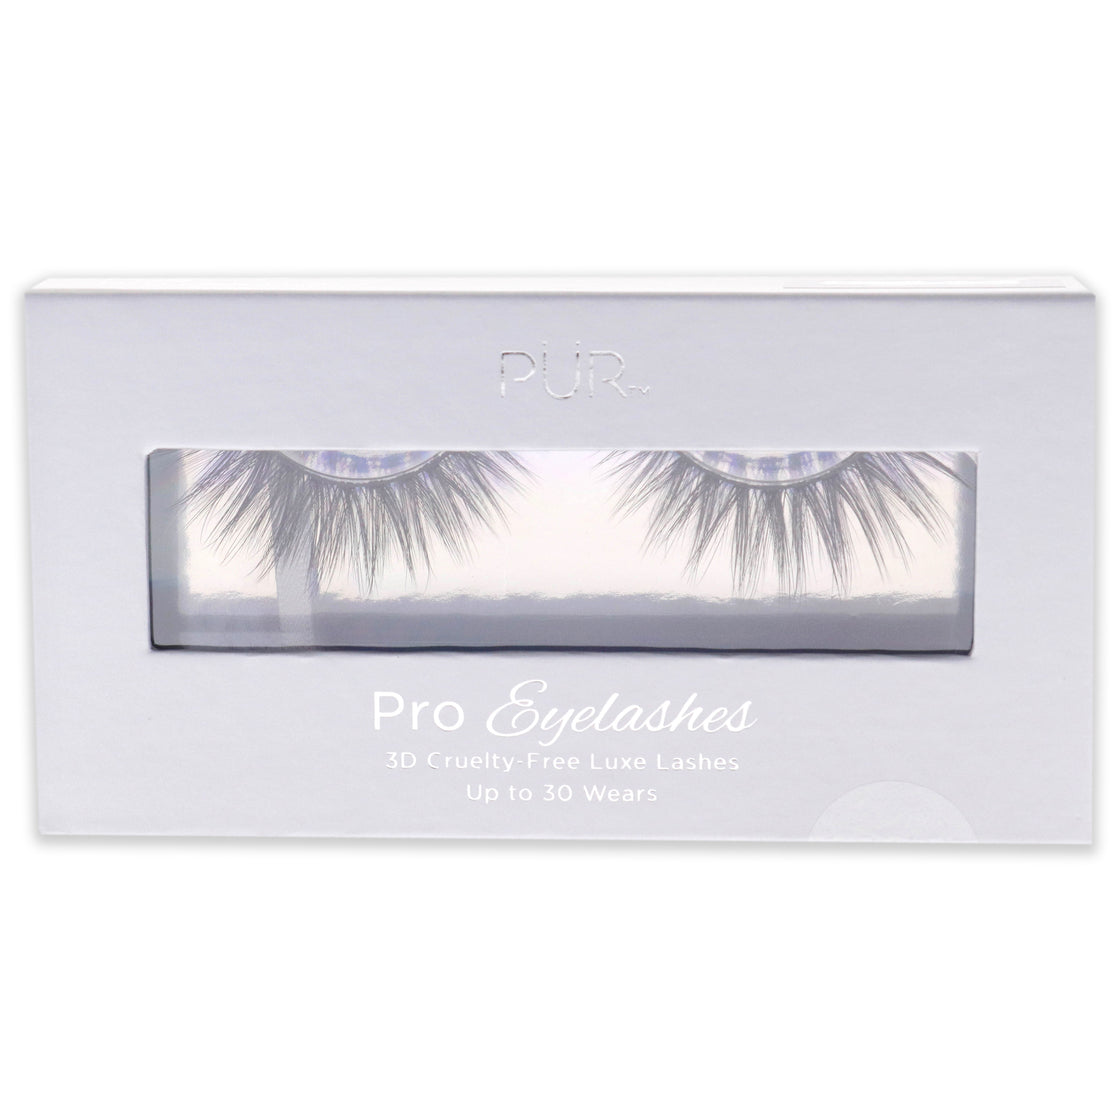 Pro Eyelashes - Bombshell by Pur Cosmetics for Women - 1 Pair Eyelashes